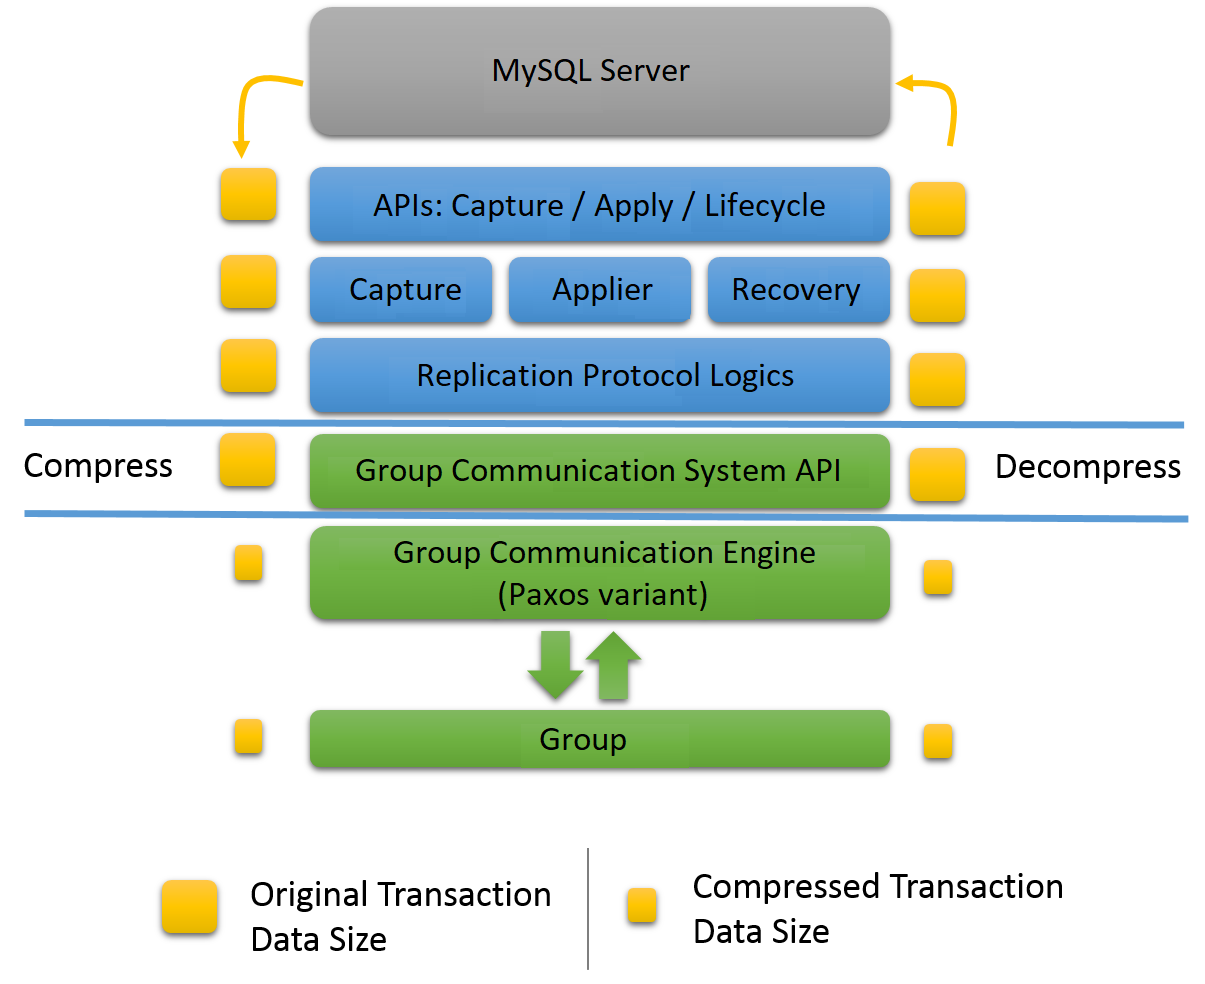 MySQL Group Replication プラグインアーキテクチャーは、前のトピックで説明したように、プラグインの 5 つのレイヤーが MySQL サーバーとレプリケーショングループの間に配置されています。 圧縮と解凍は、Group Replication プラグインの第 4 層である Group Communication System API によって処理されます。 グループ通信エンジン (プラグインの第 5 層) とグループメンバーは、より小さいデータサイズの圧縮トランザクションを使用します。 MySQL Server コアおよび Group Replication プラグインの上位 3 つのレイヤー (API、キャプチャ、適用機能およびリカバリコンポーネント、およびレプリケーションプロトコルモジュール) では、より大きいデータサイズの元のトランザクションが使用されます。